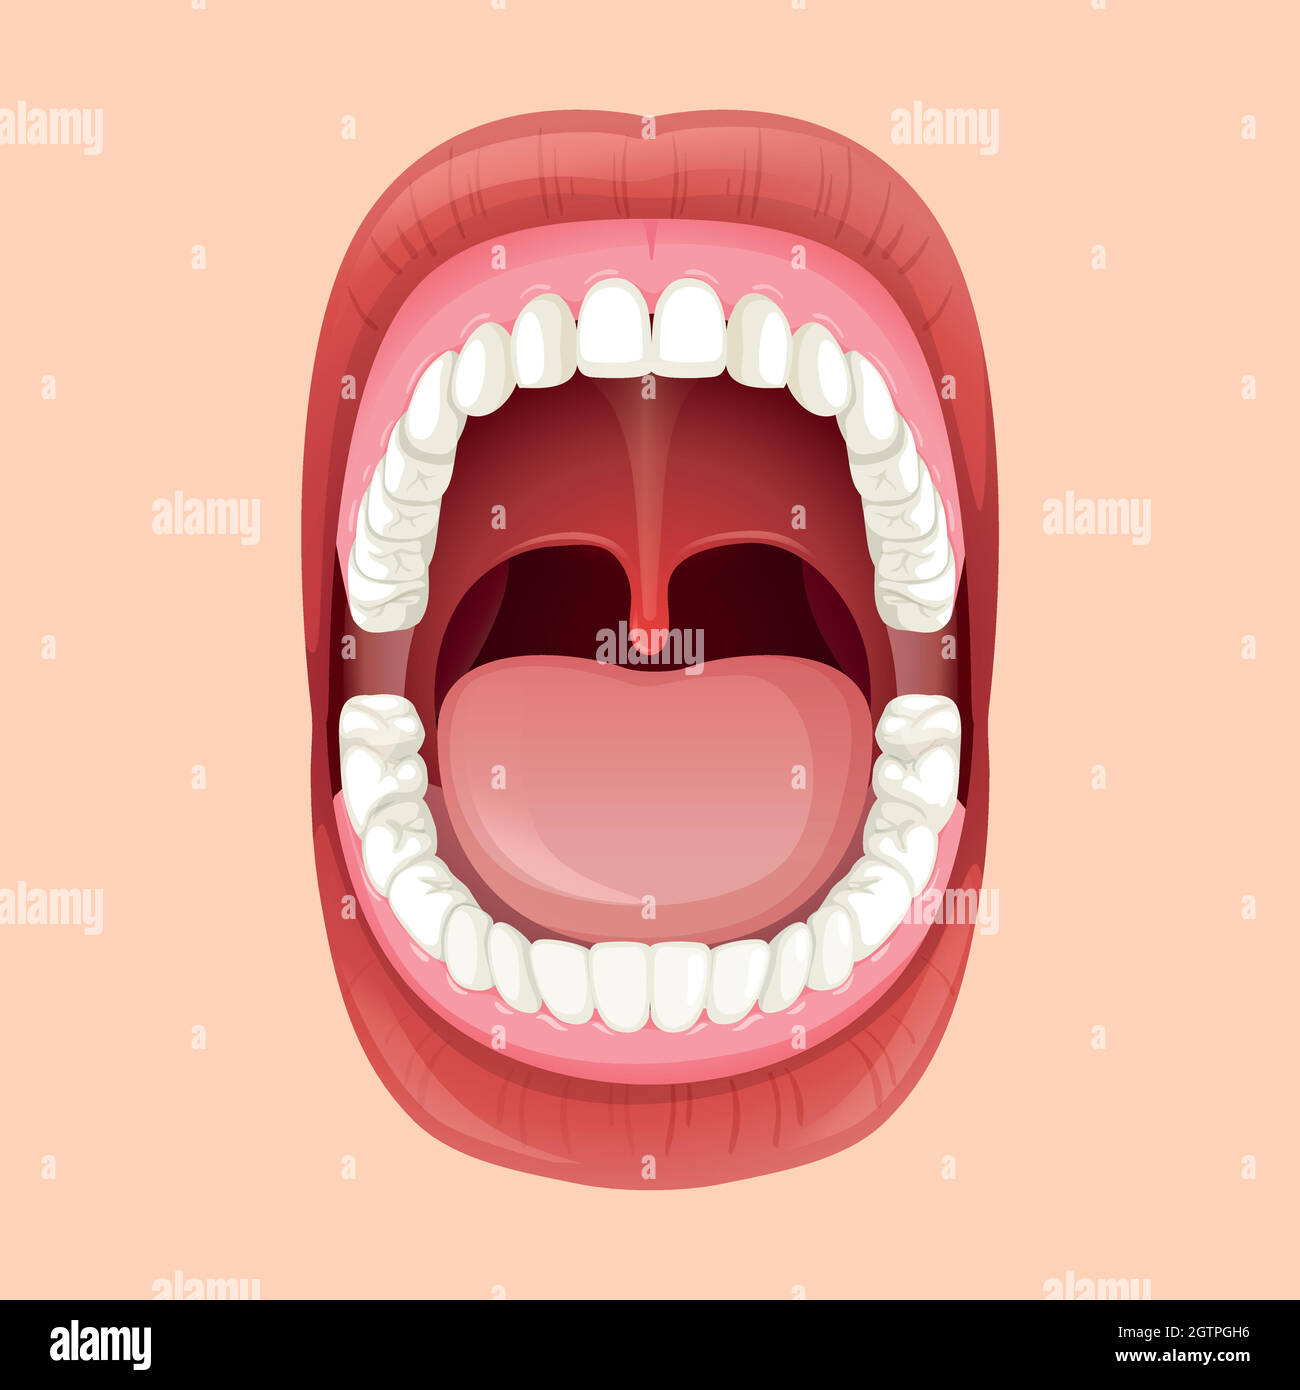 Anatomia della bocca umana Illustrazione Vettoriale